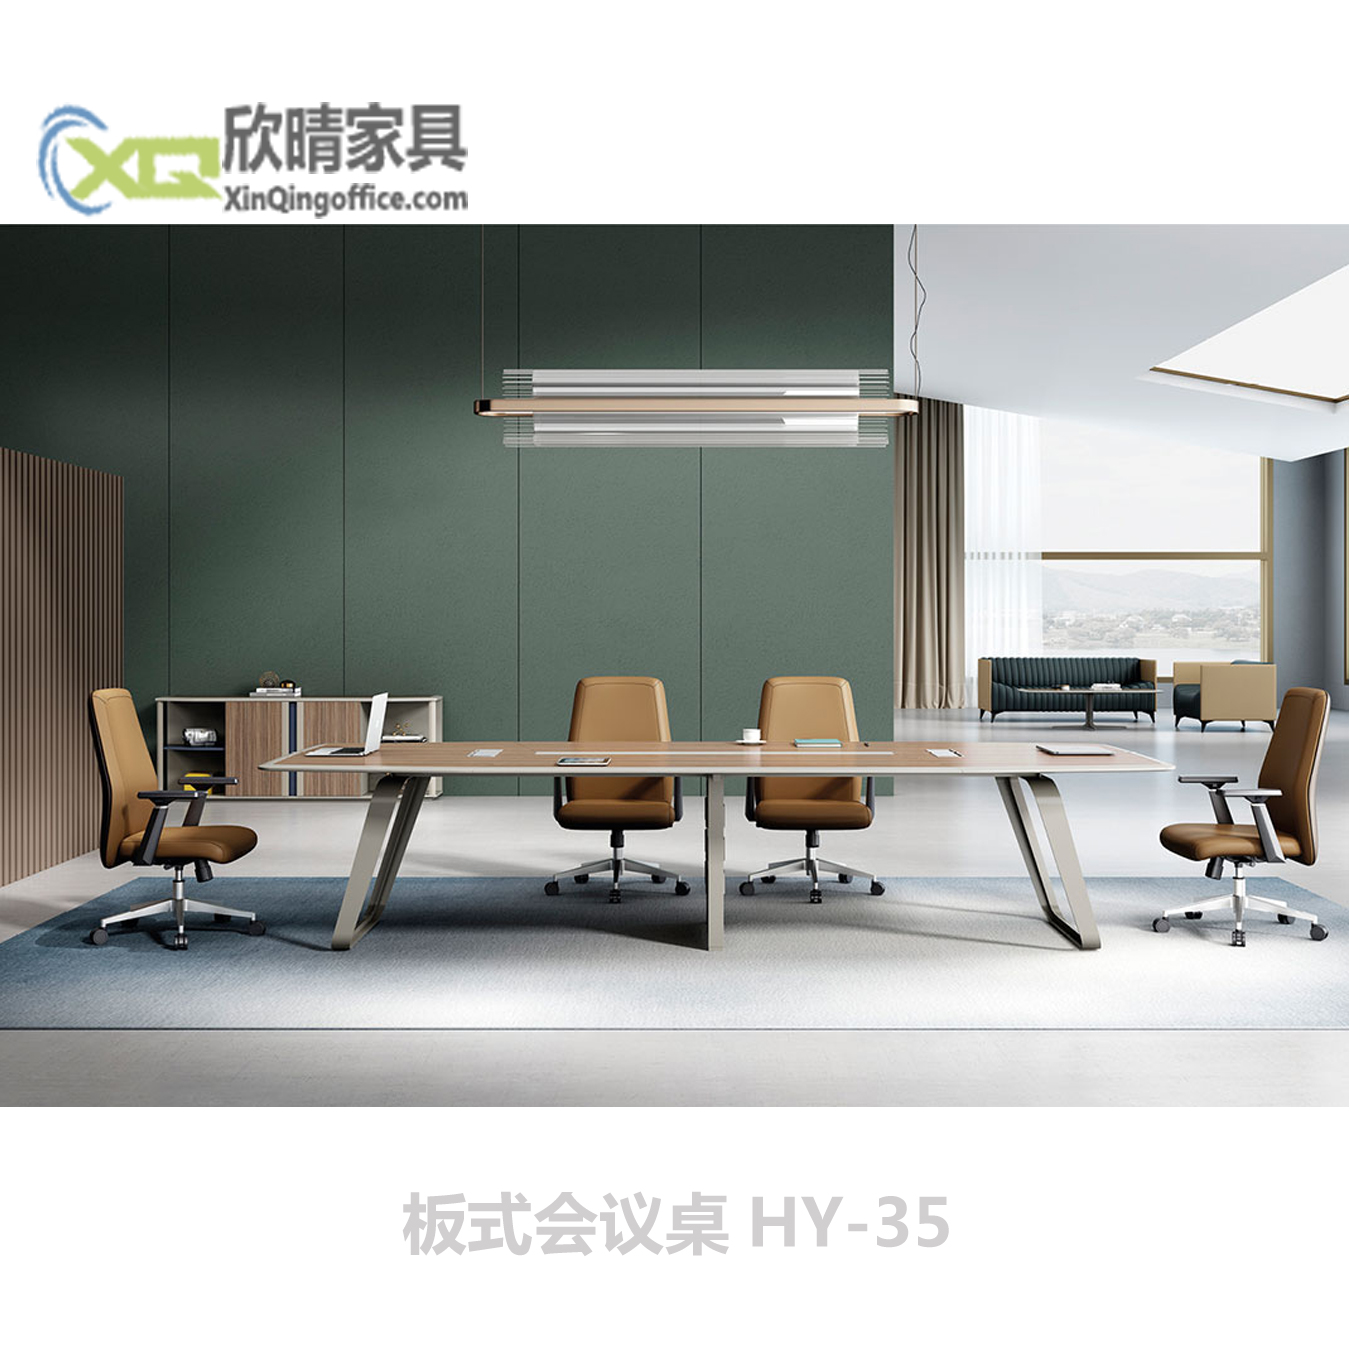 板式会议桌-板式会议桌HY-35产品介绍